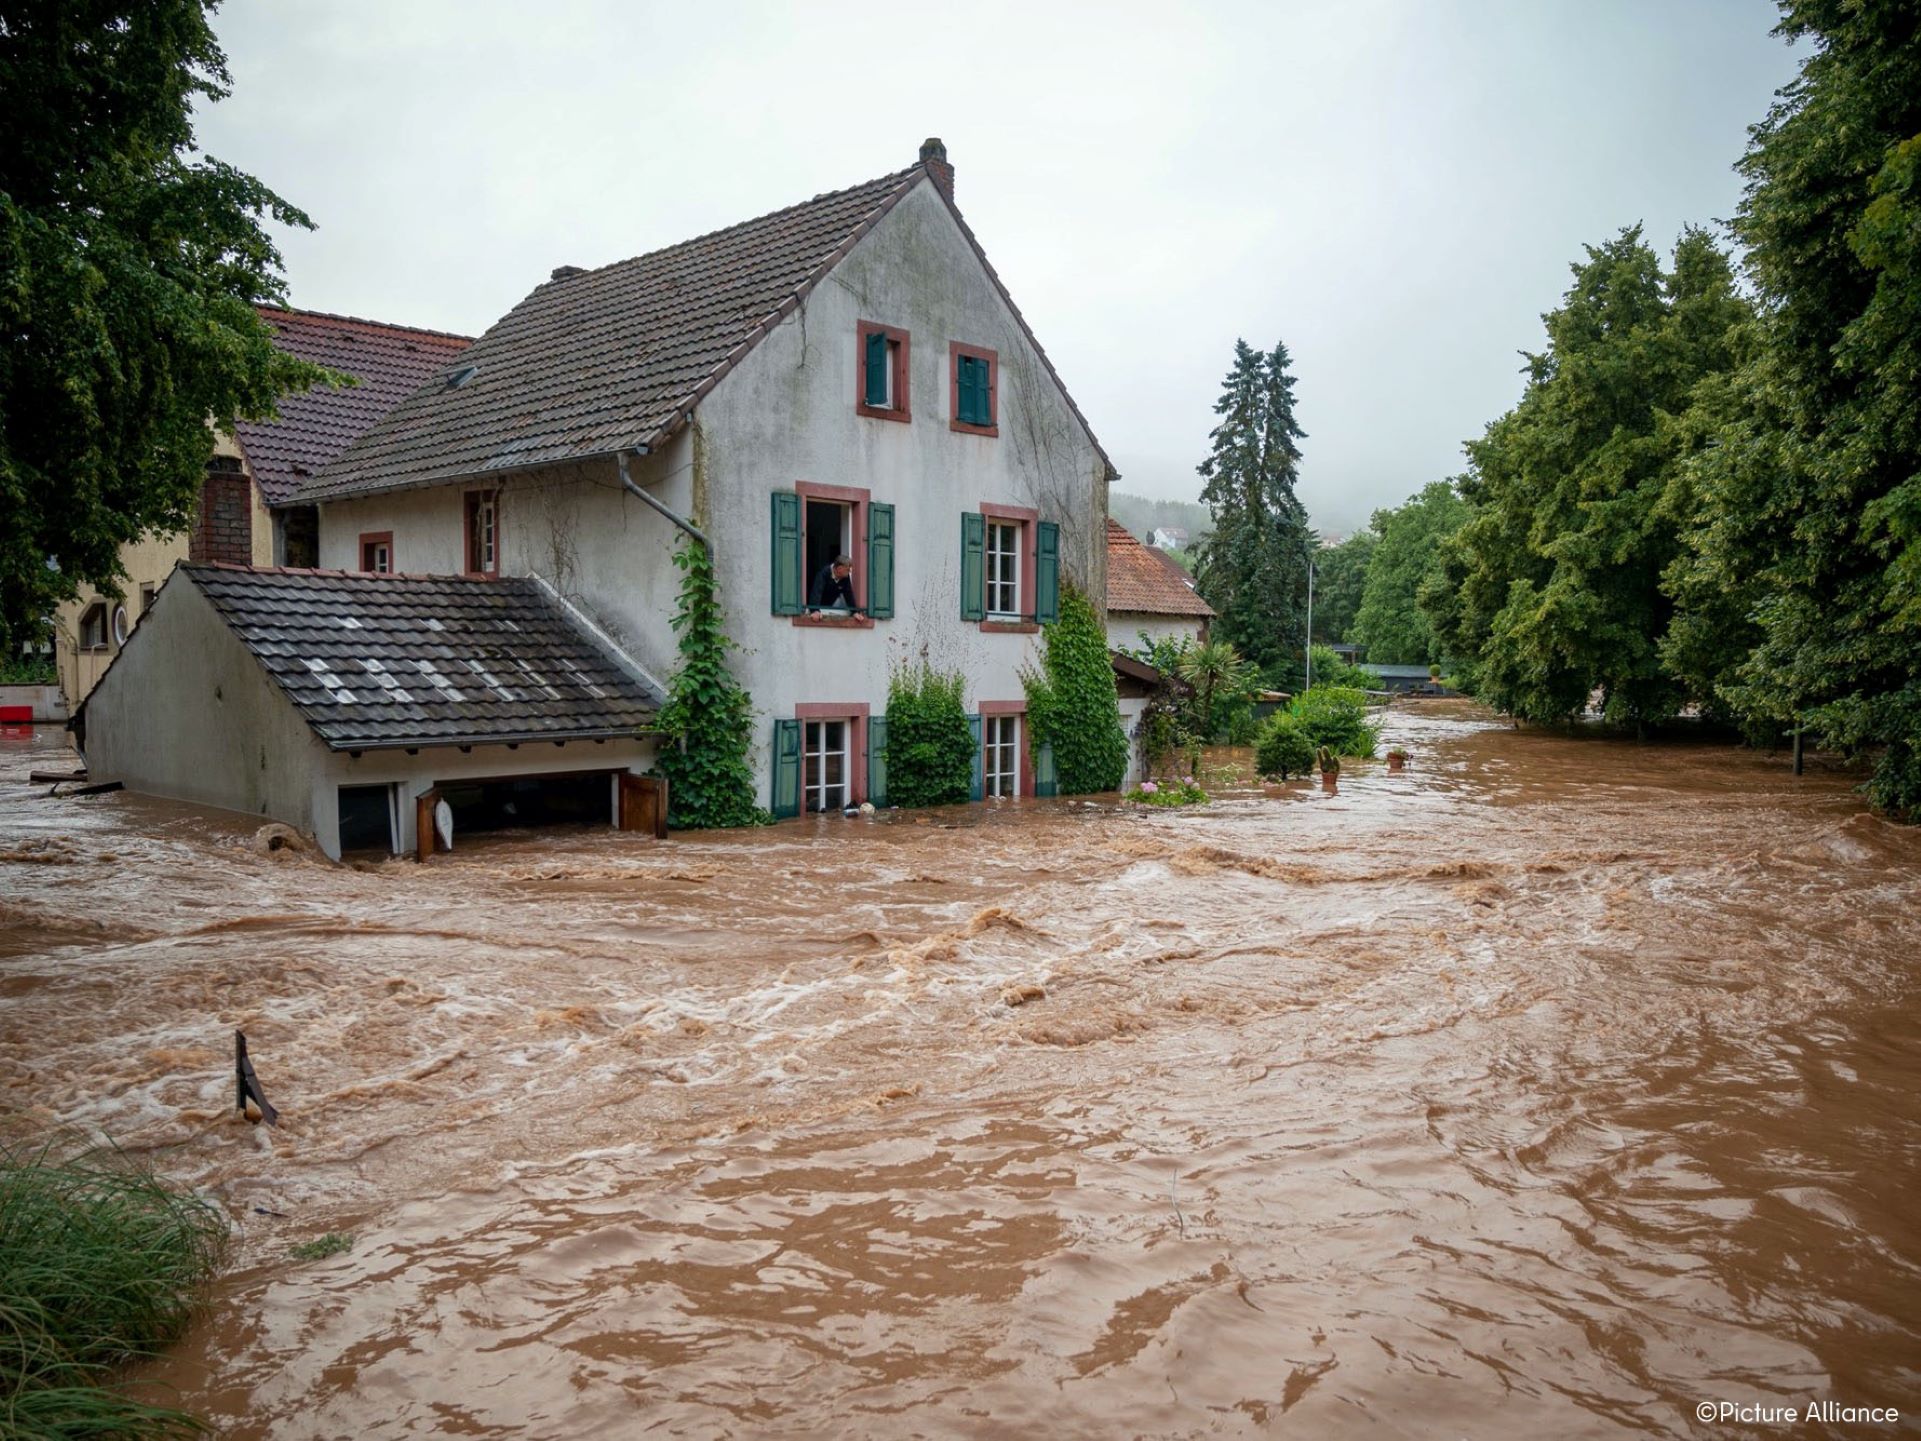 Polémica tras la tragedia por inundaciones en Alemania